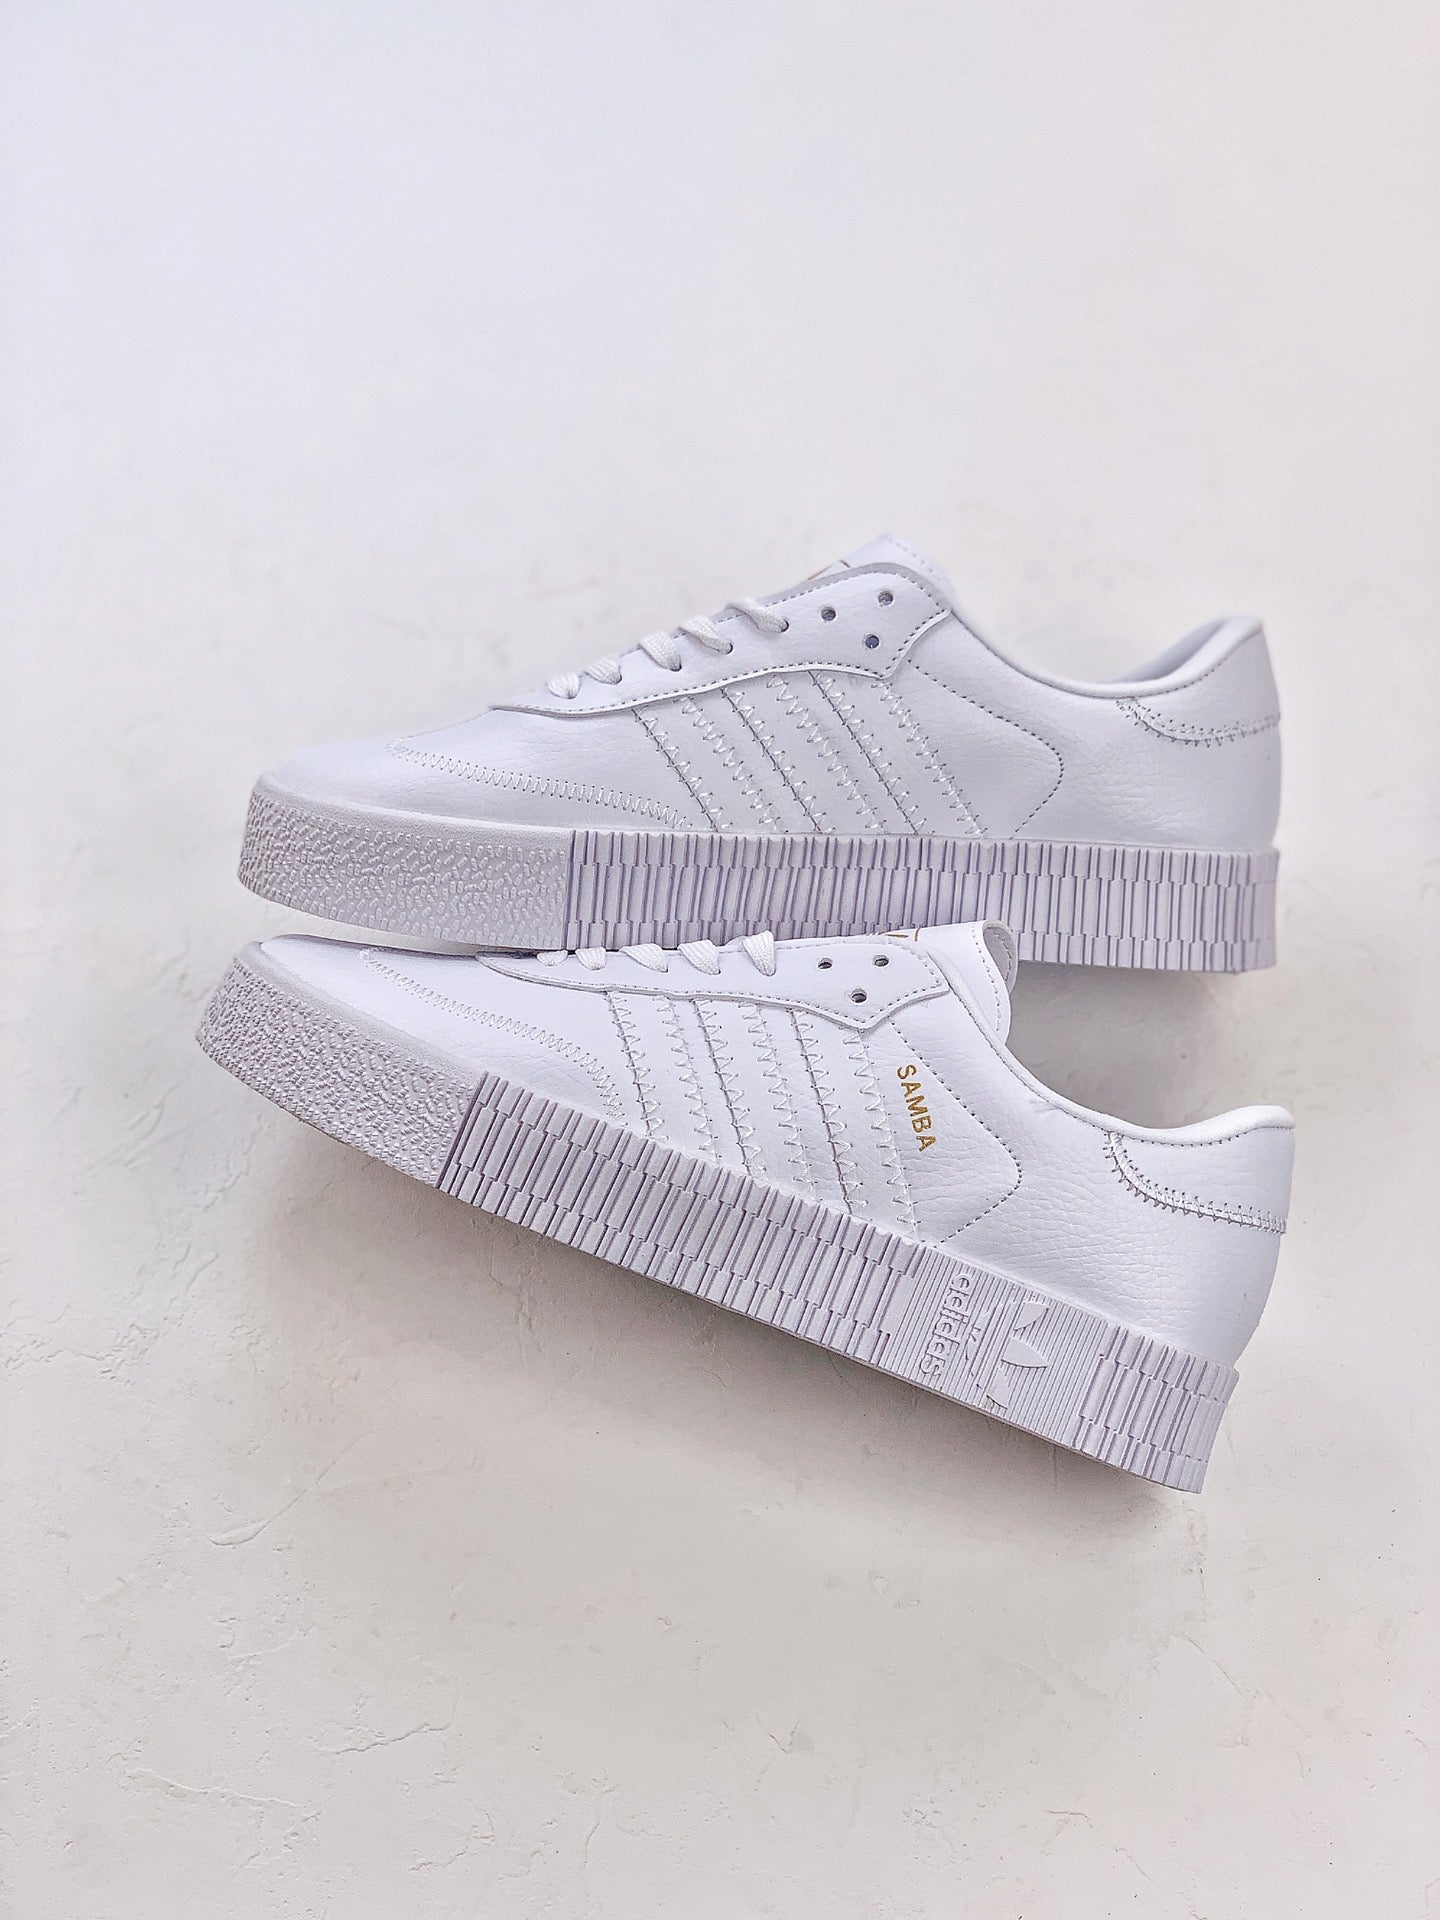 Adidas samba full white shoes